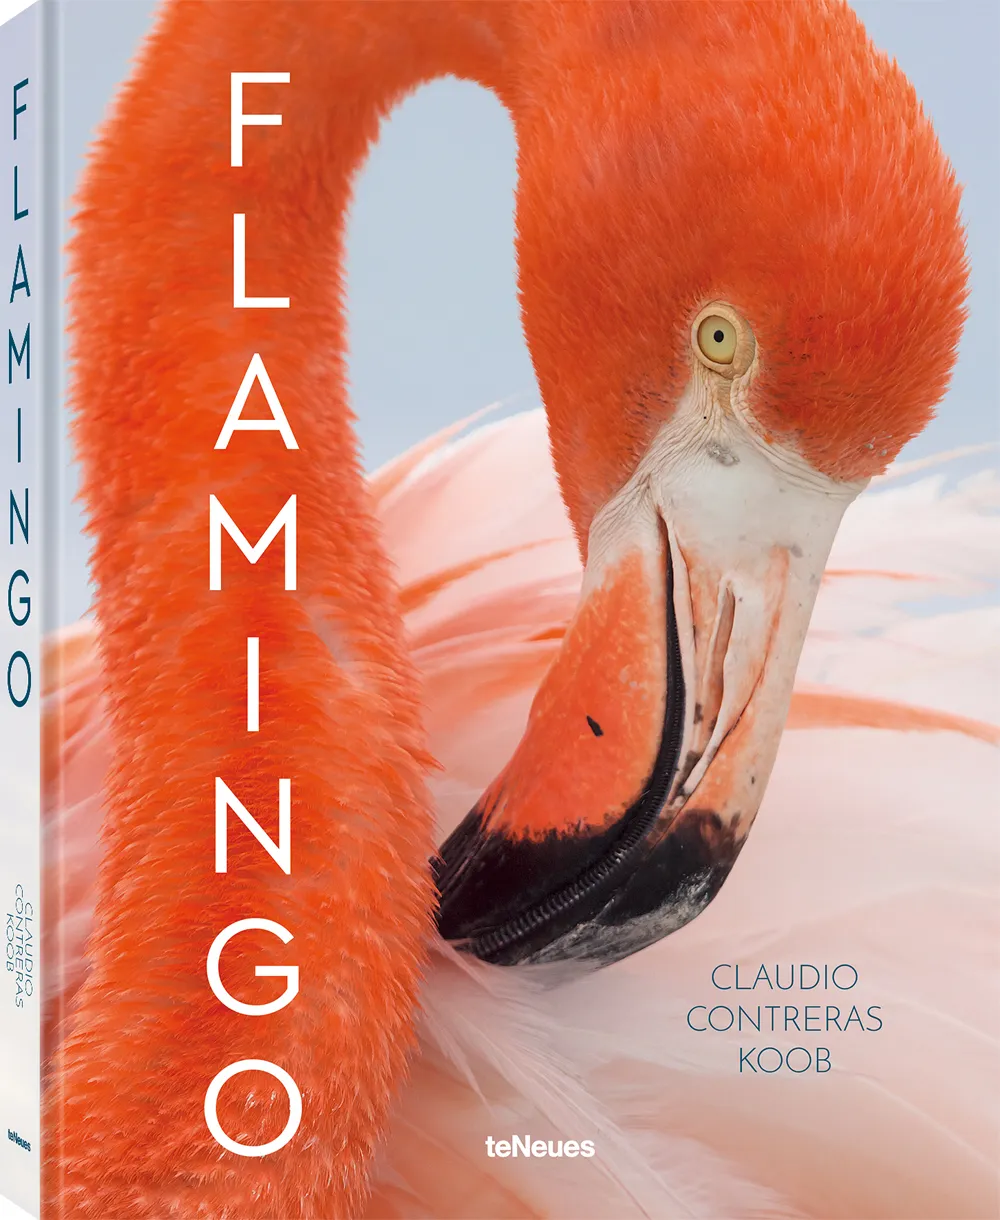 Book credit: Flamingo by Claudio Contreras Koob Image credit: 2022 © Claudio Contreras Koob